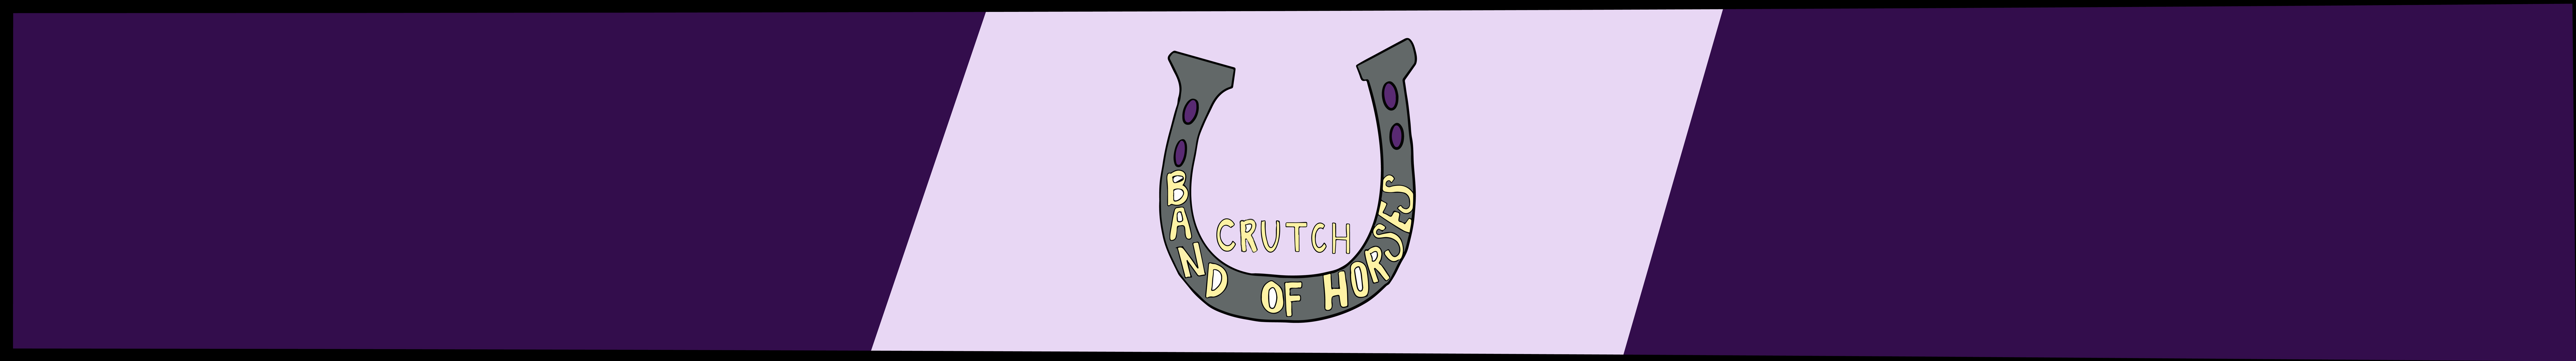 Band of Horses "Crutch"